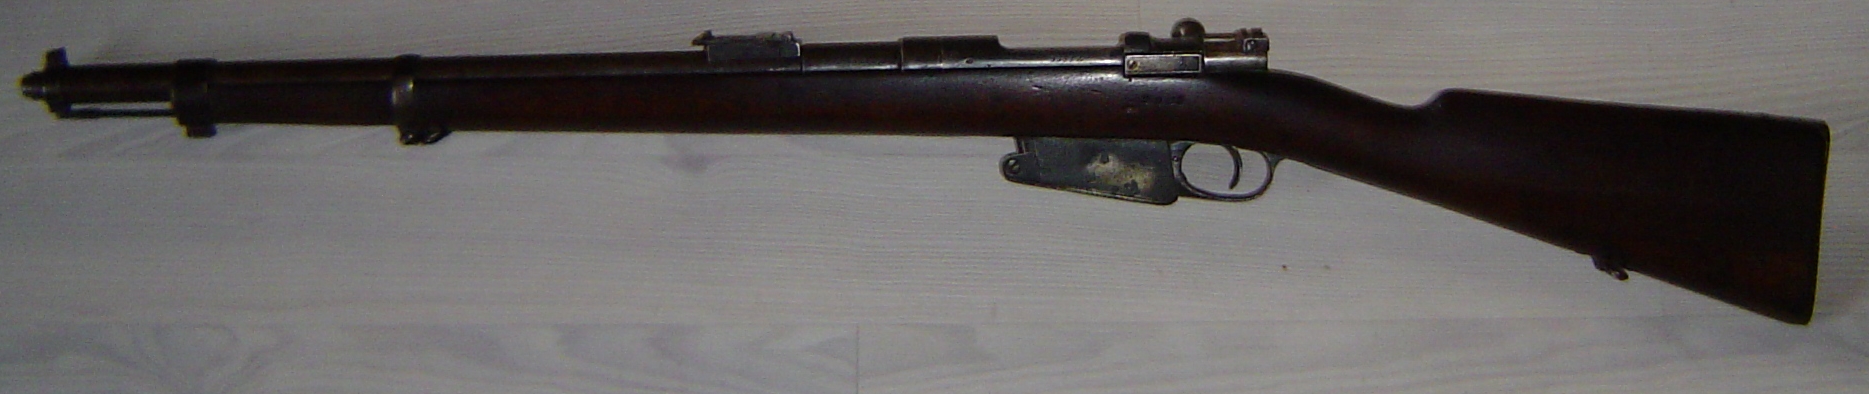 Carabine modèle 1889 avec baïonnette